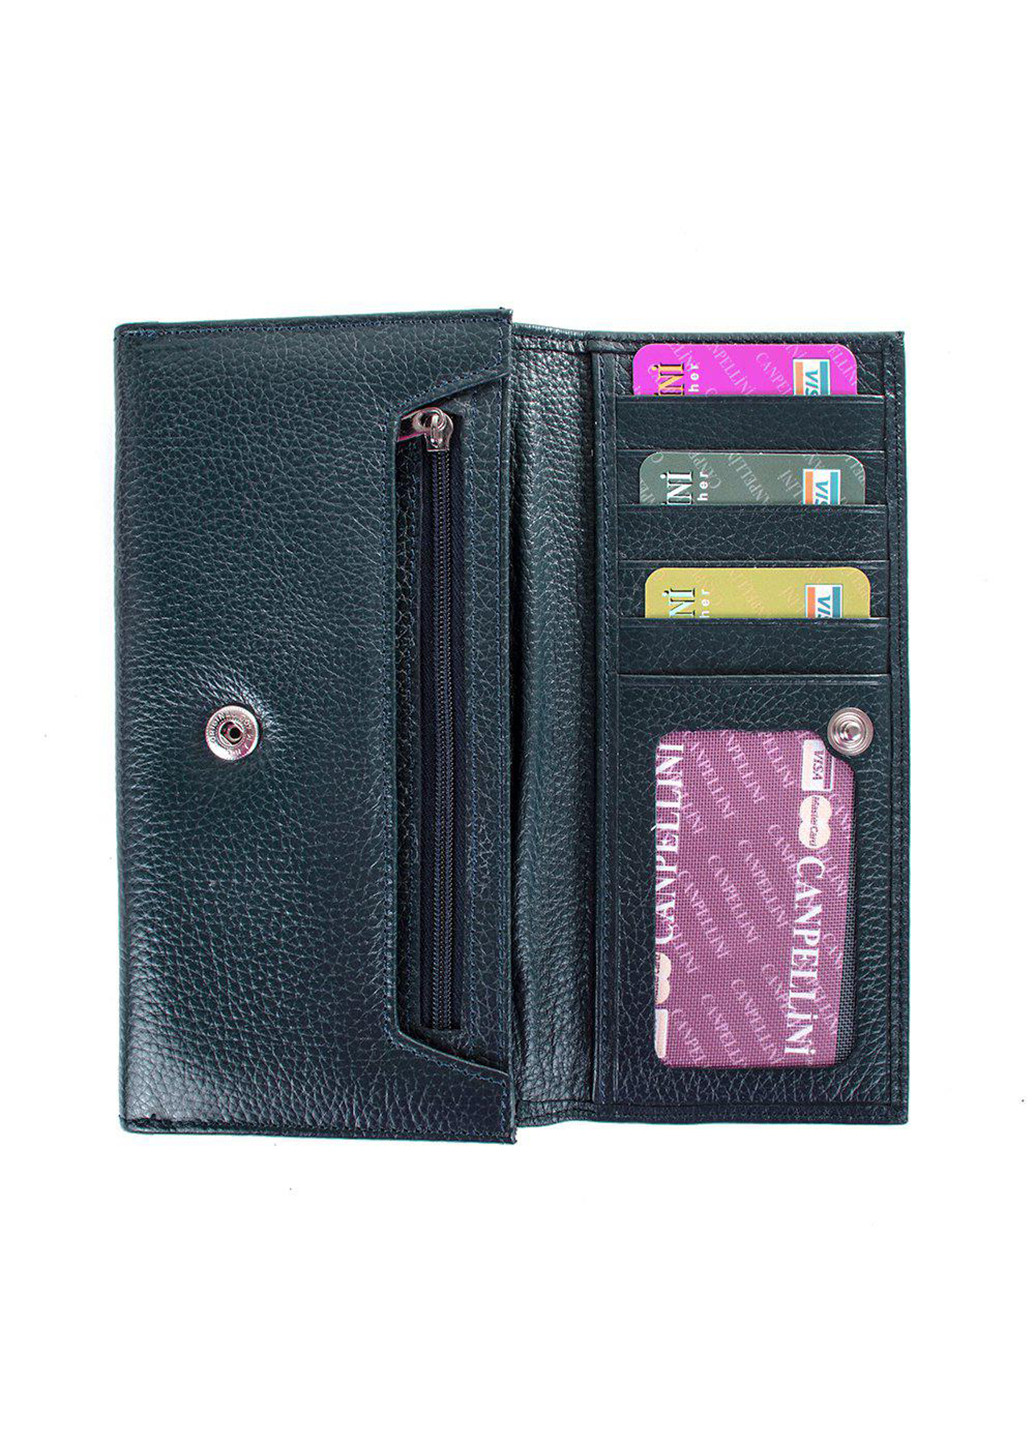 Жіночий шкіряний гаманець 18,8х9,7х2,2 см Canpellini (252133272)